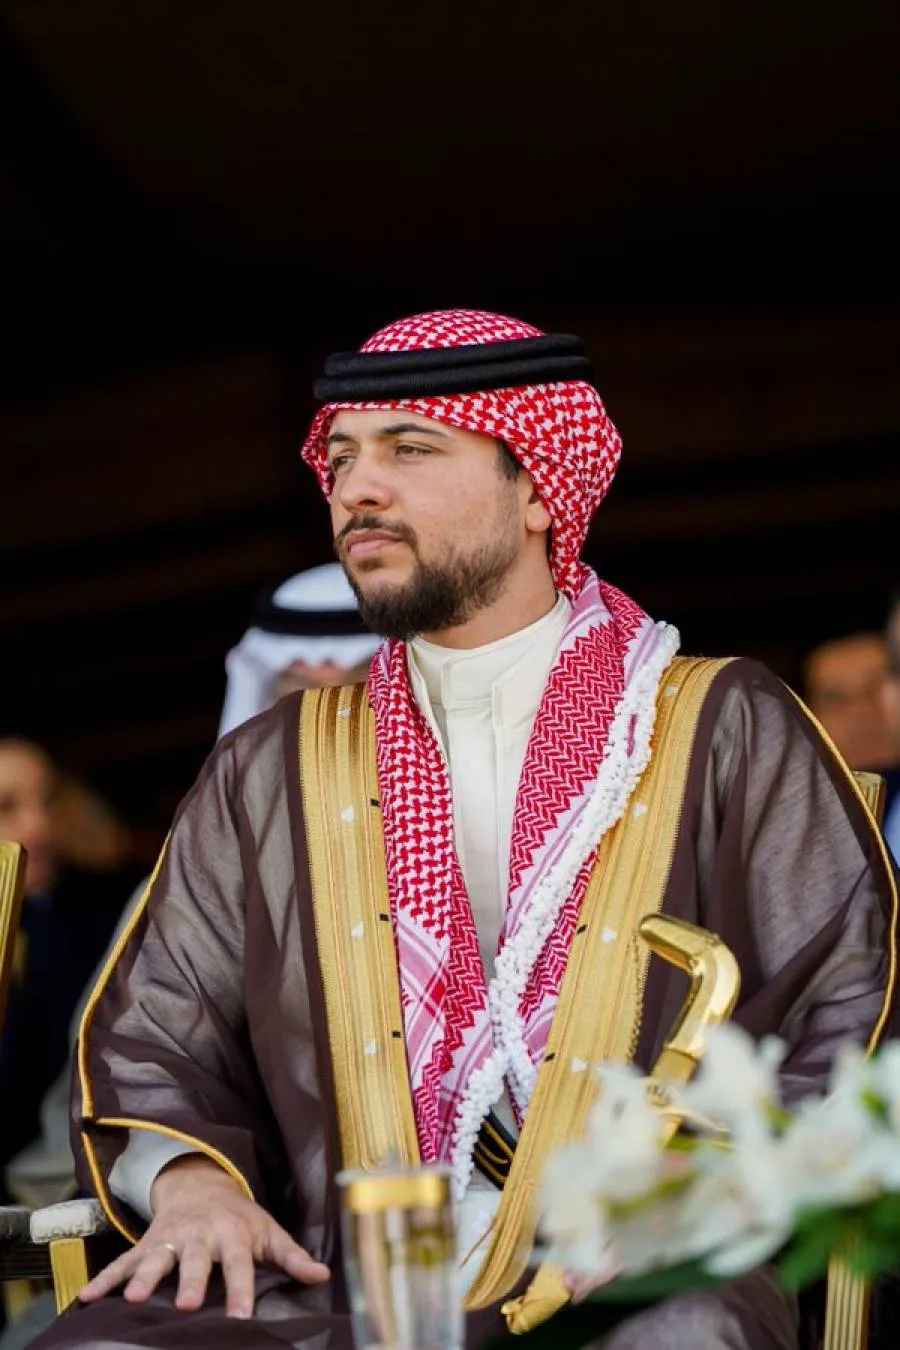 مدار الساعة,مناسبات أردنية,ولي العهد,الأمير الحسين بن عبد الله الثاني,الملك عبدالله الثاني,وكالة الأنباء الأردنية,المنتخب الوطني,منتخب النشامى,كأس العالم,جامعة البترا,المنتخب الوطني لكرة القدم,الأمم المتحدة